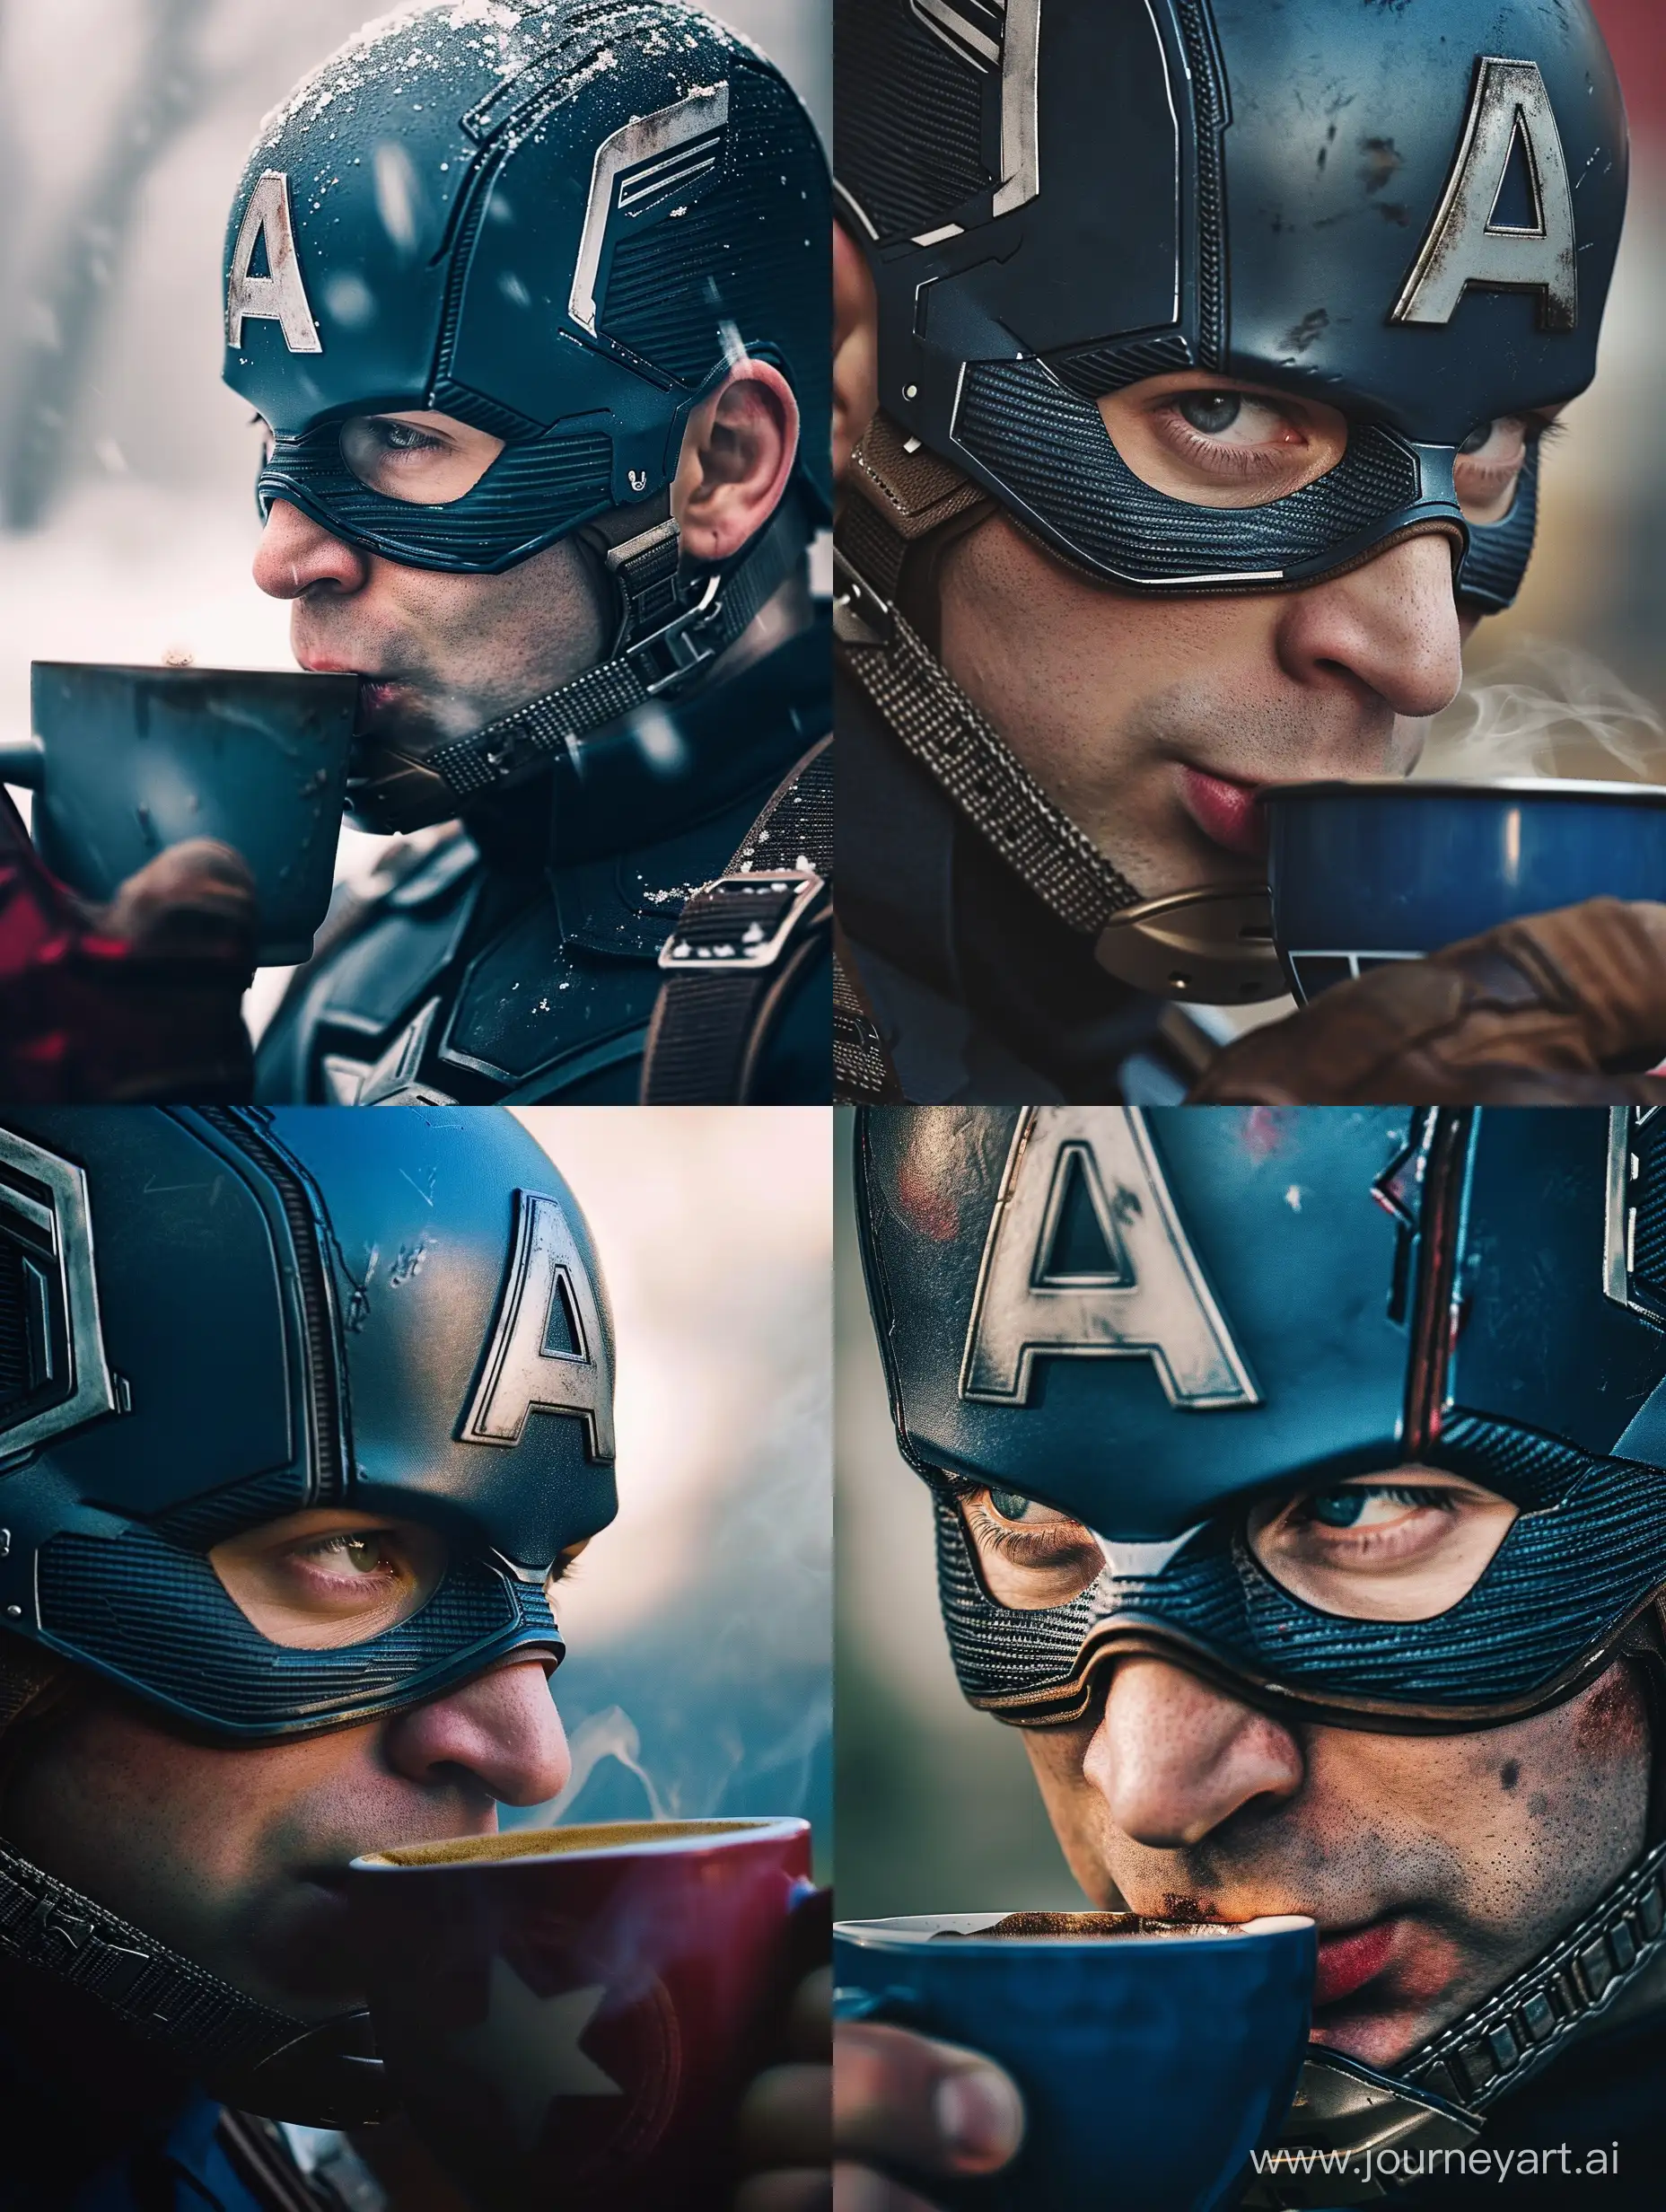 Captain-America-Enjoying-Coffee-Break-in-Russian-MidJourney-Style